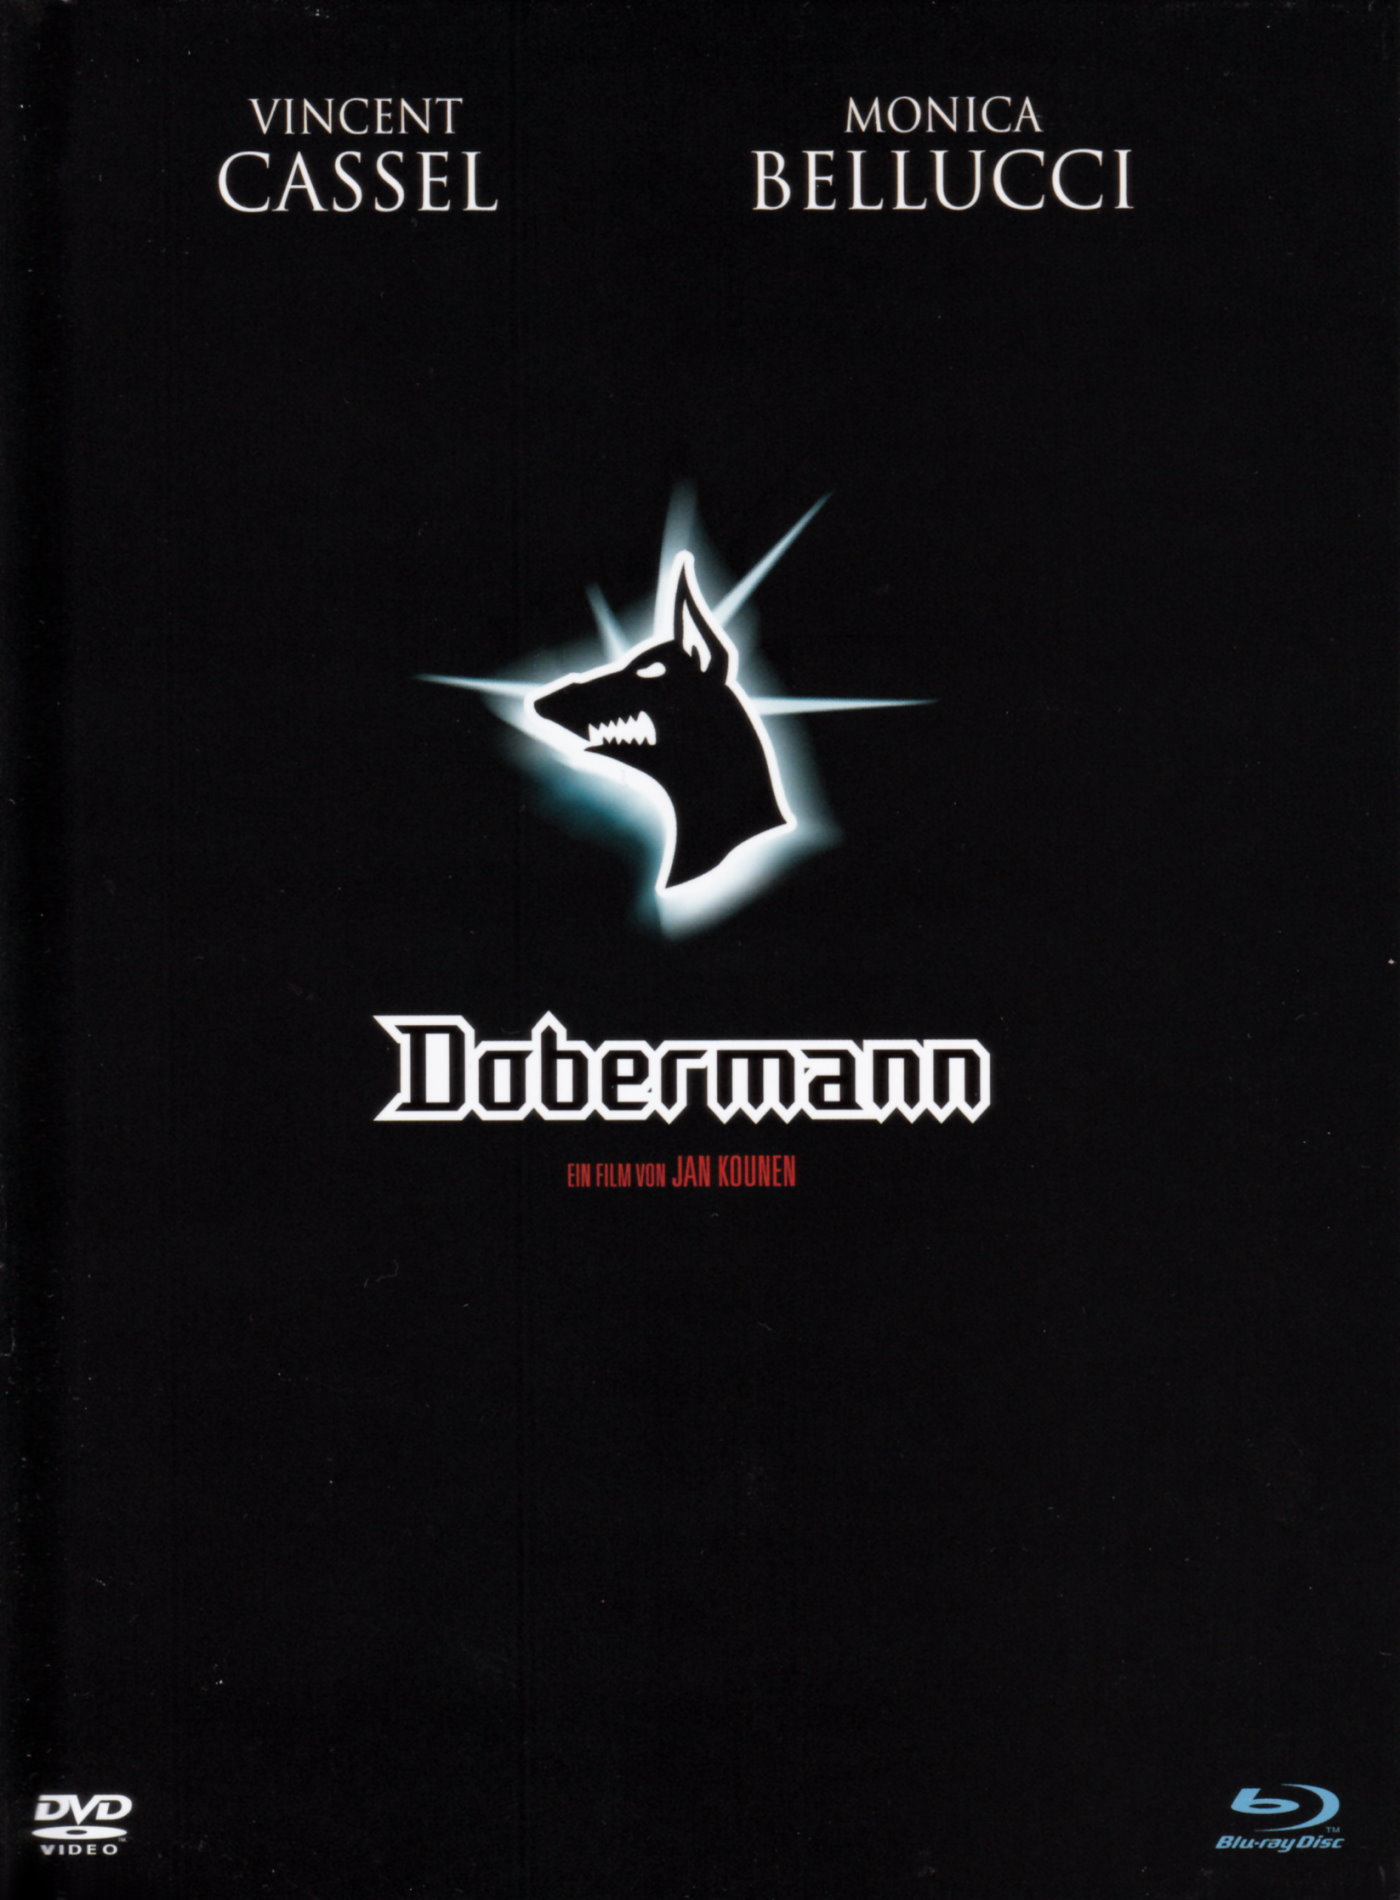 Cover - Dobermann.jpg